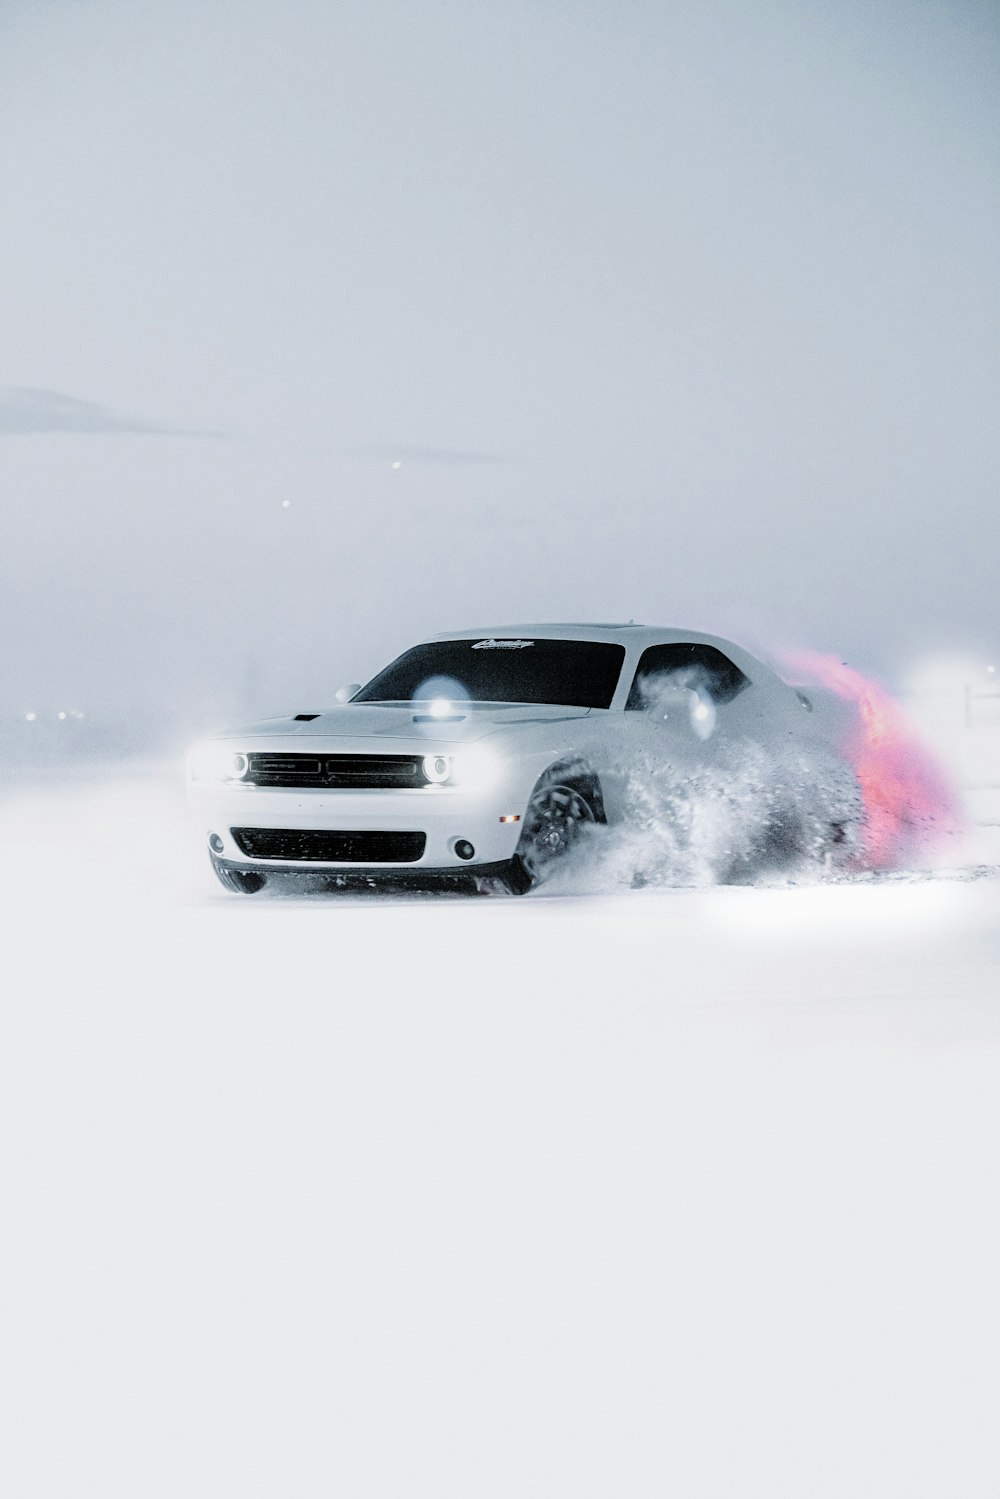 a car driving through a snowy area